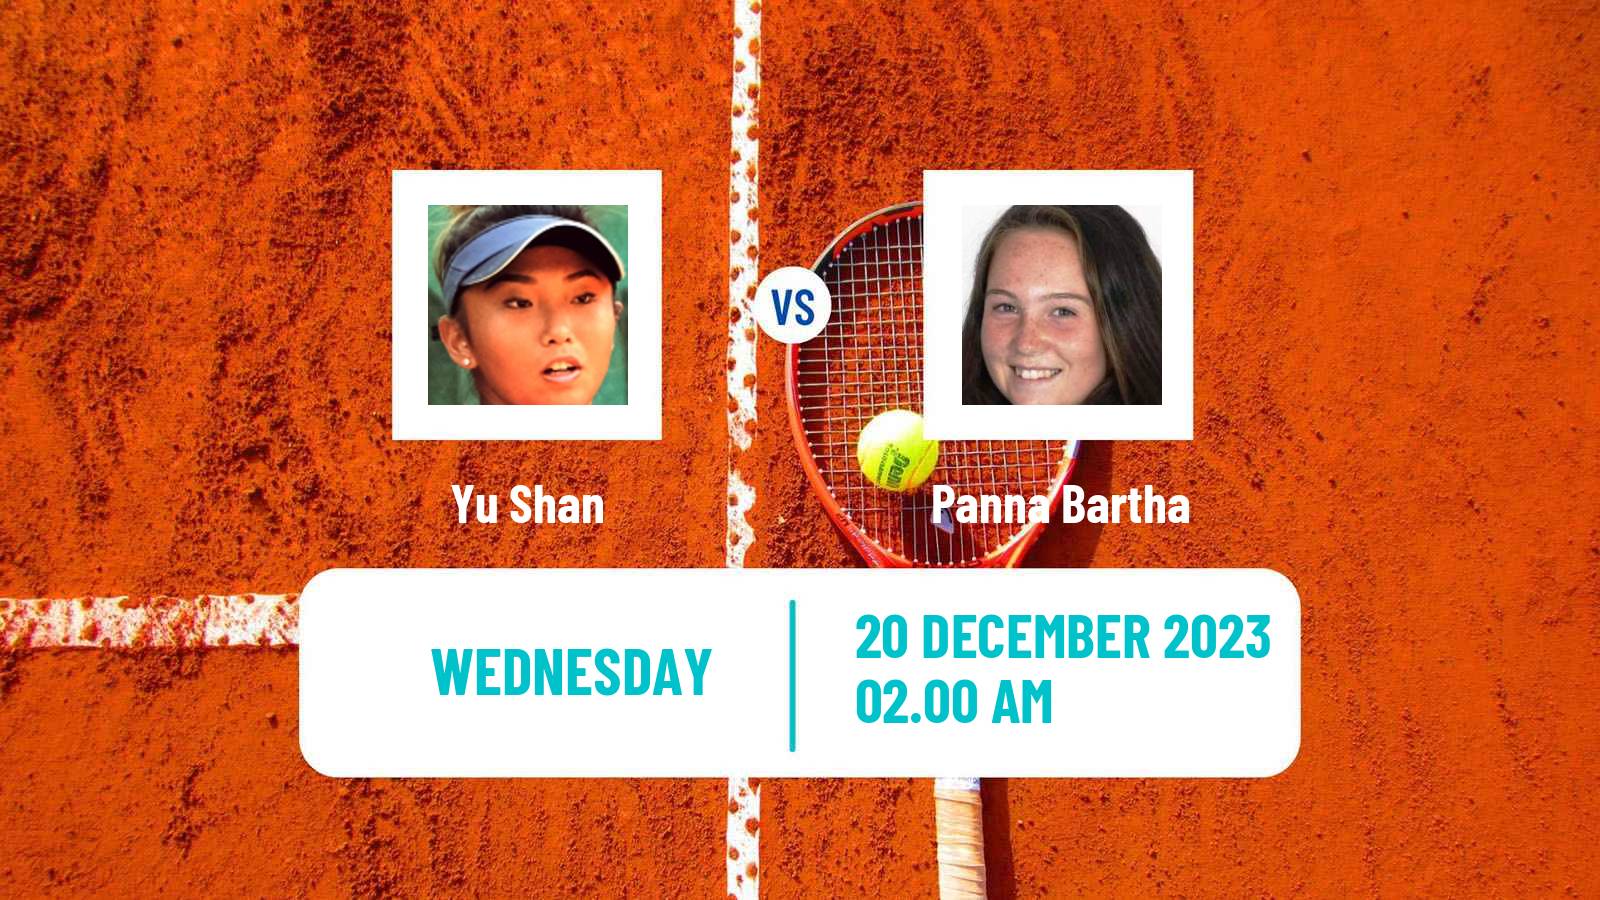 Tennis ITF W15 Antalya 23 Women Yu Shan - Panna Bartha